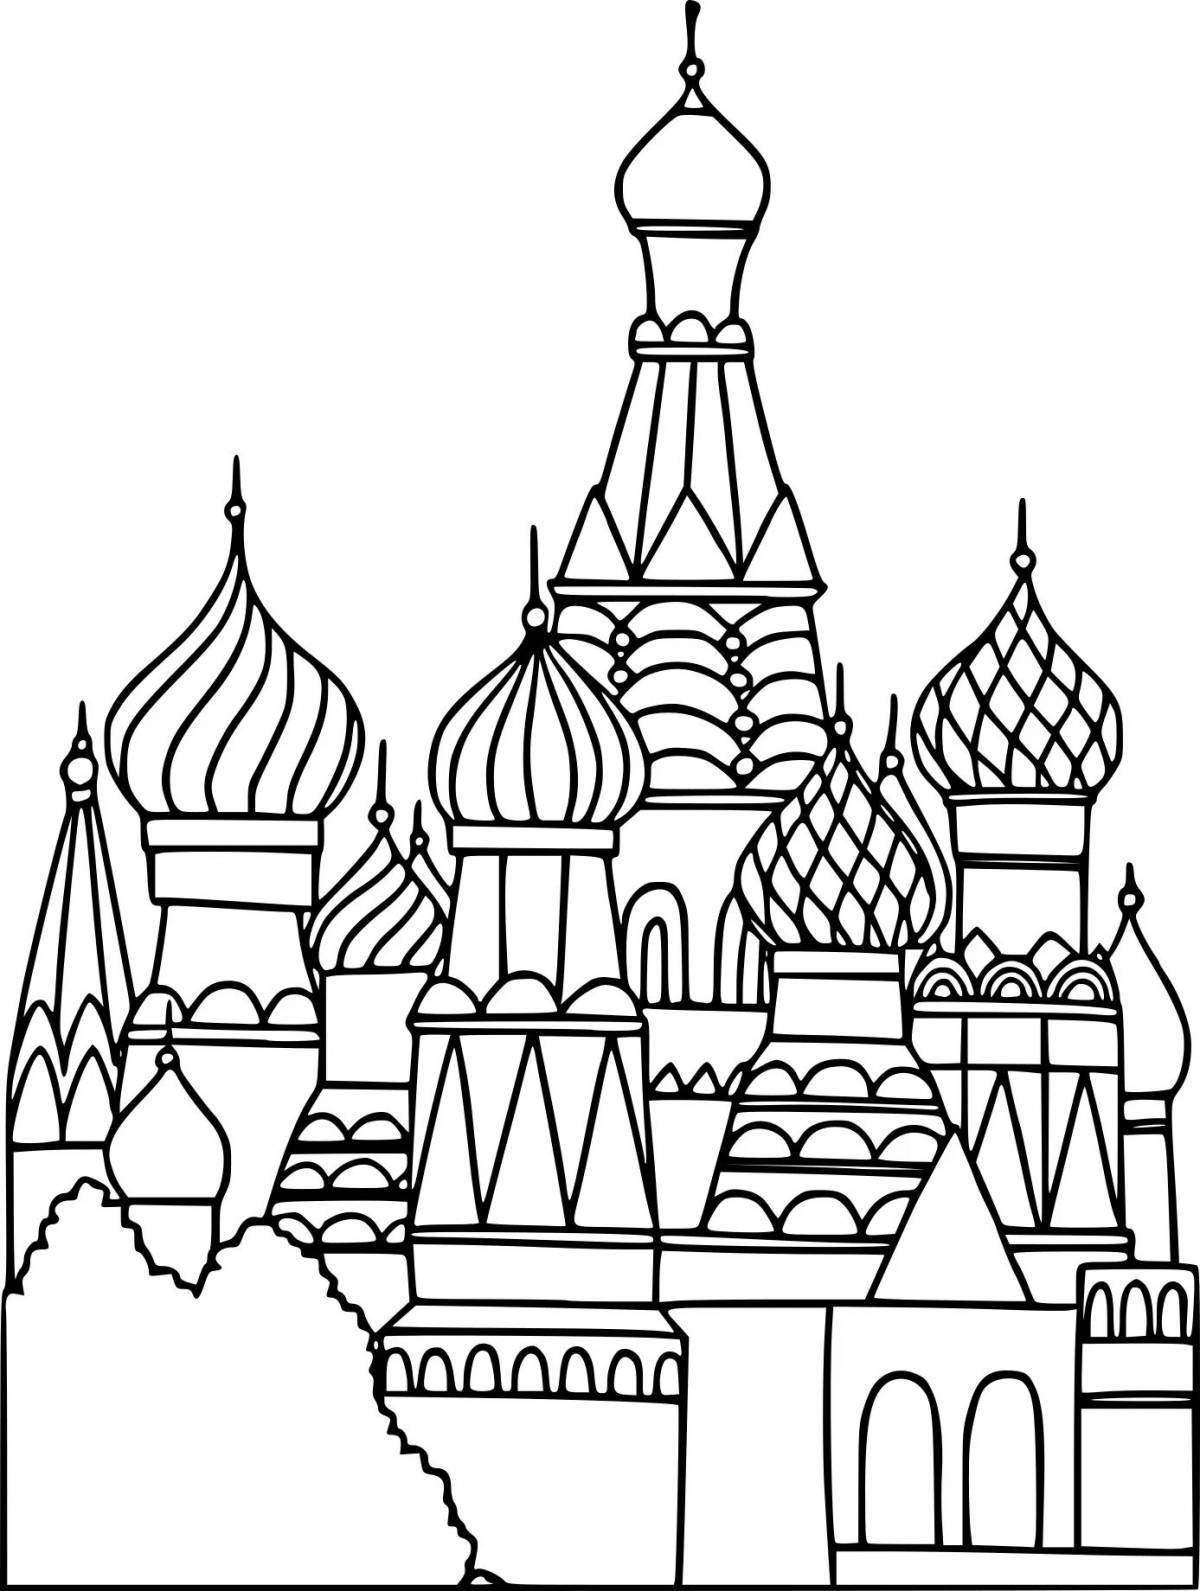 Великолепный кремль раскраска для детей